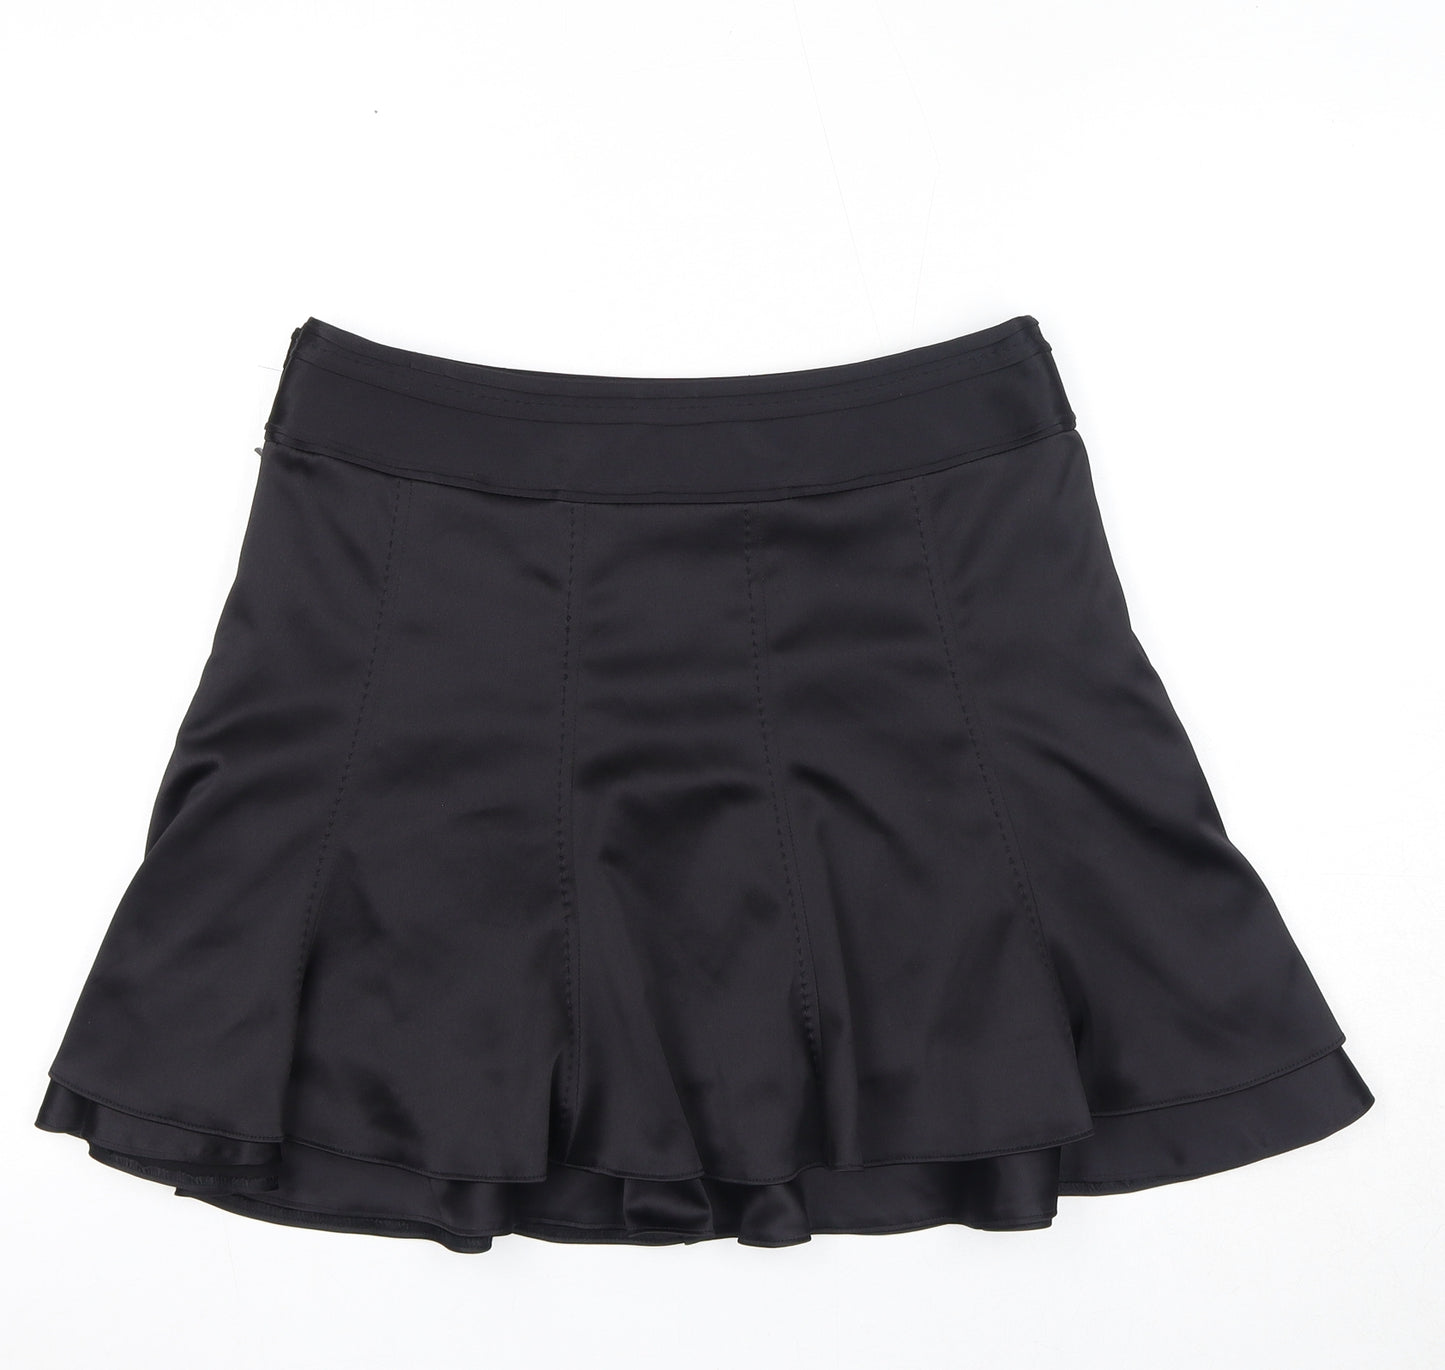 NEXT Womens Black Polyester Skater Skirt Size 12 Zip